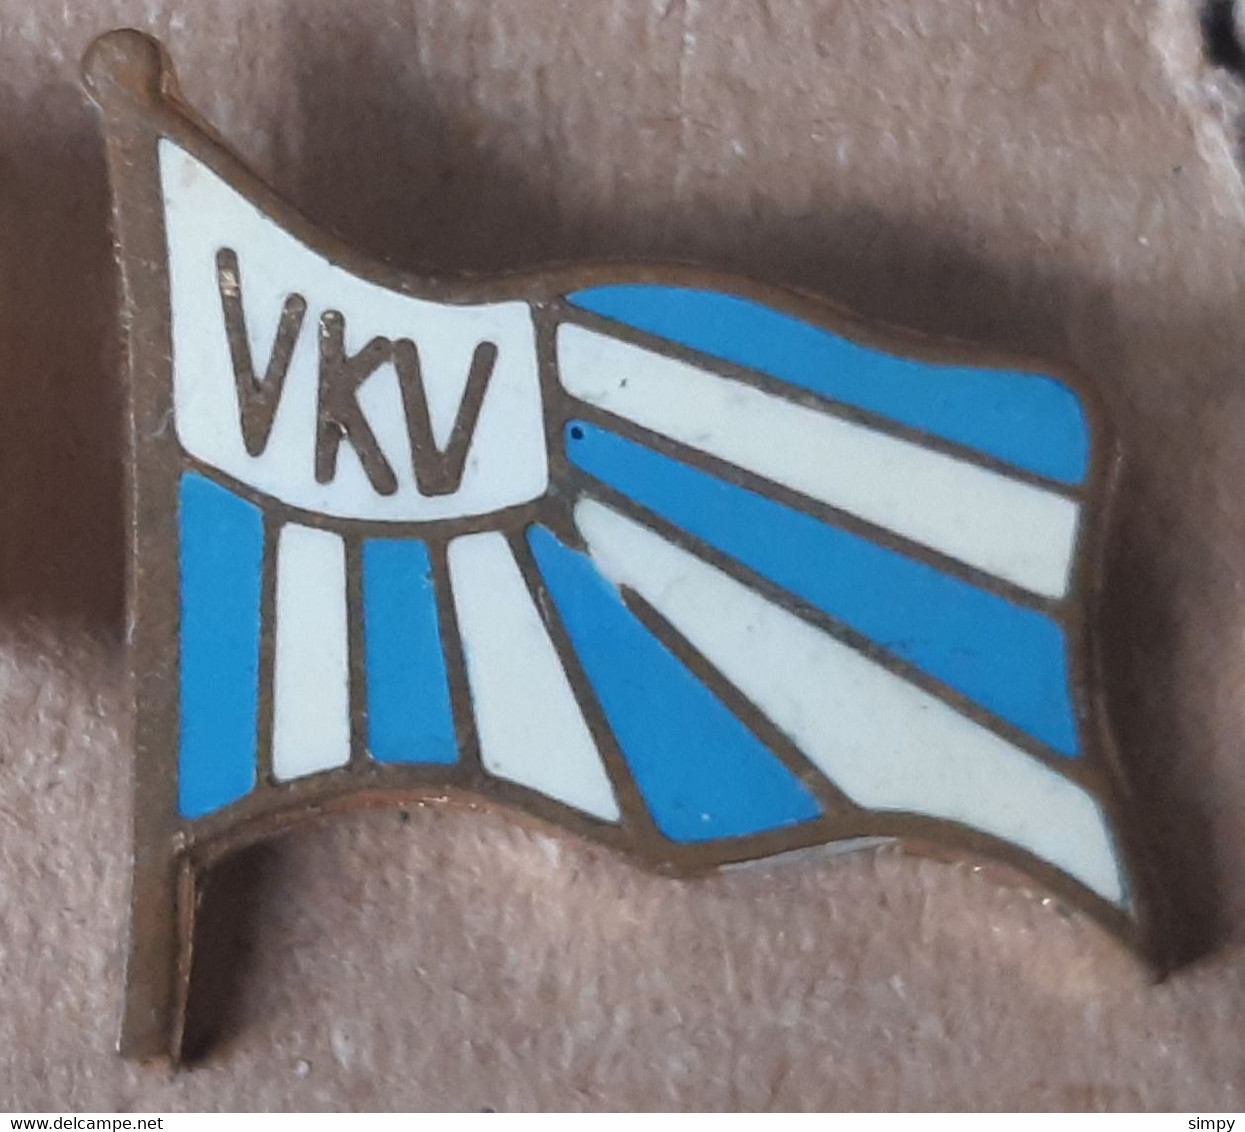 Rowing  Club VKV Vukovar Croatia Vintage Enamel Badge Pin - Rudersport